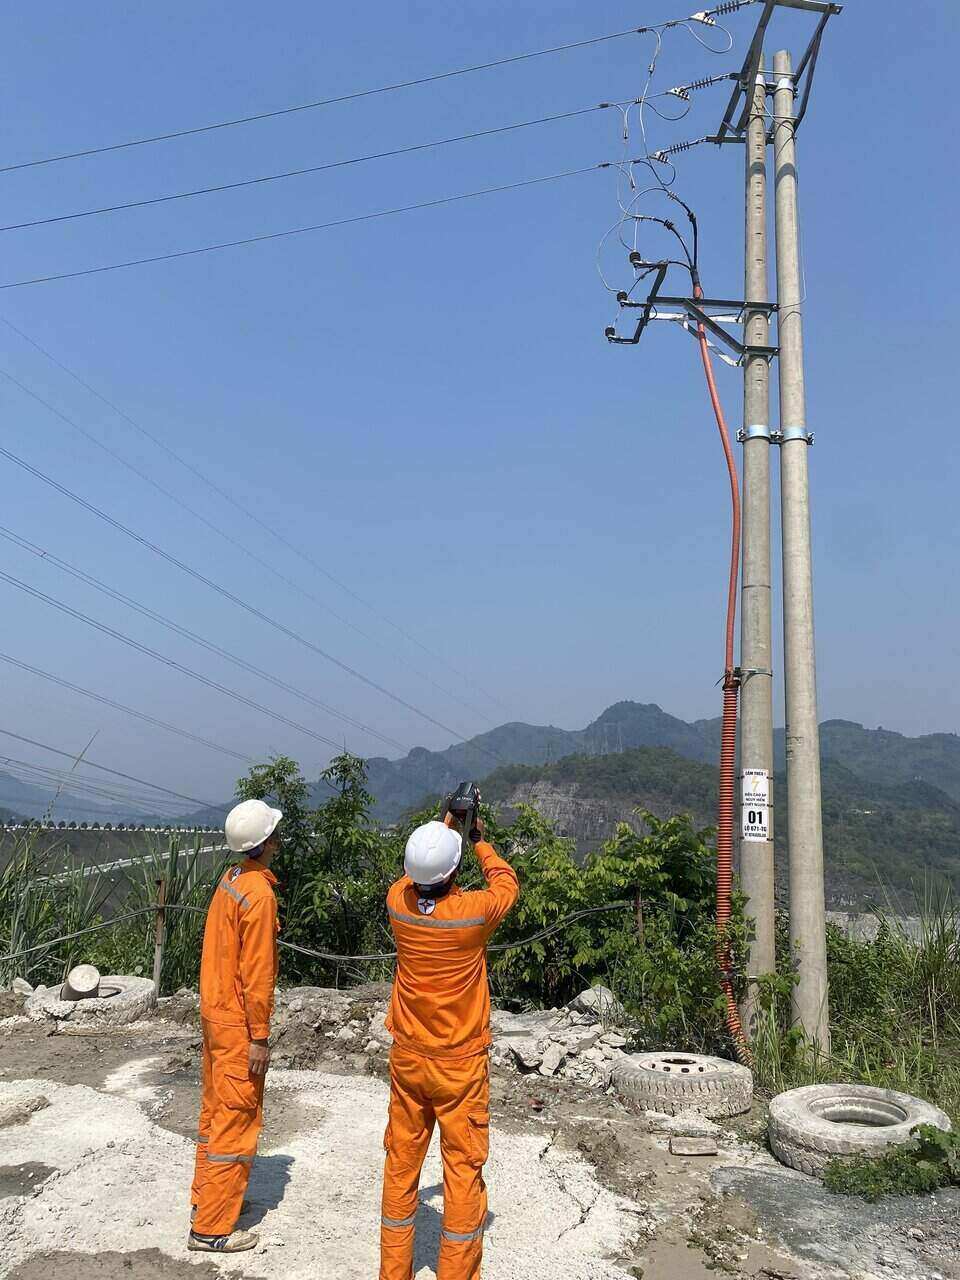 Dưới thời tiết nắng nóng gay gắt, trời trong xanh không một gợn mây, những công nhân điện vẫn miệt mài đảm bảo truyền tải điện để phục vụ cho sinh hoạt của người dân. Ảnh: Minh Nguyễn